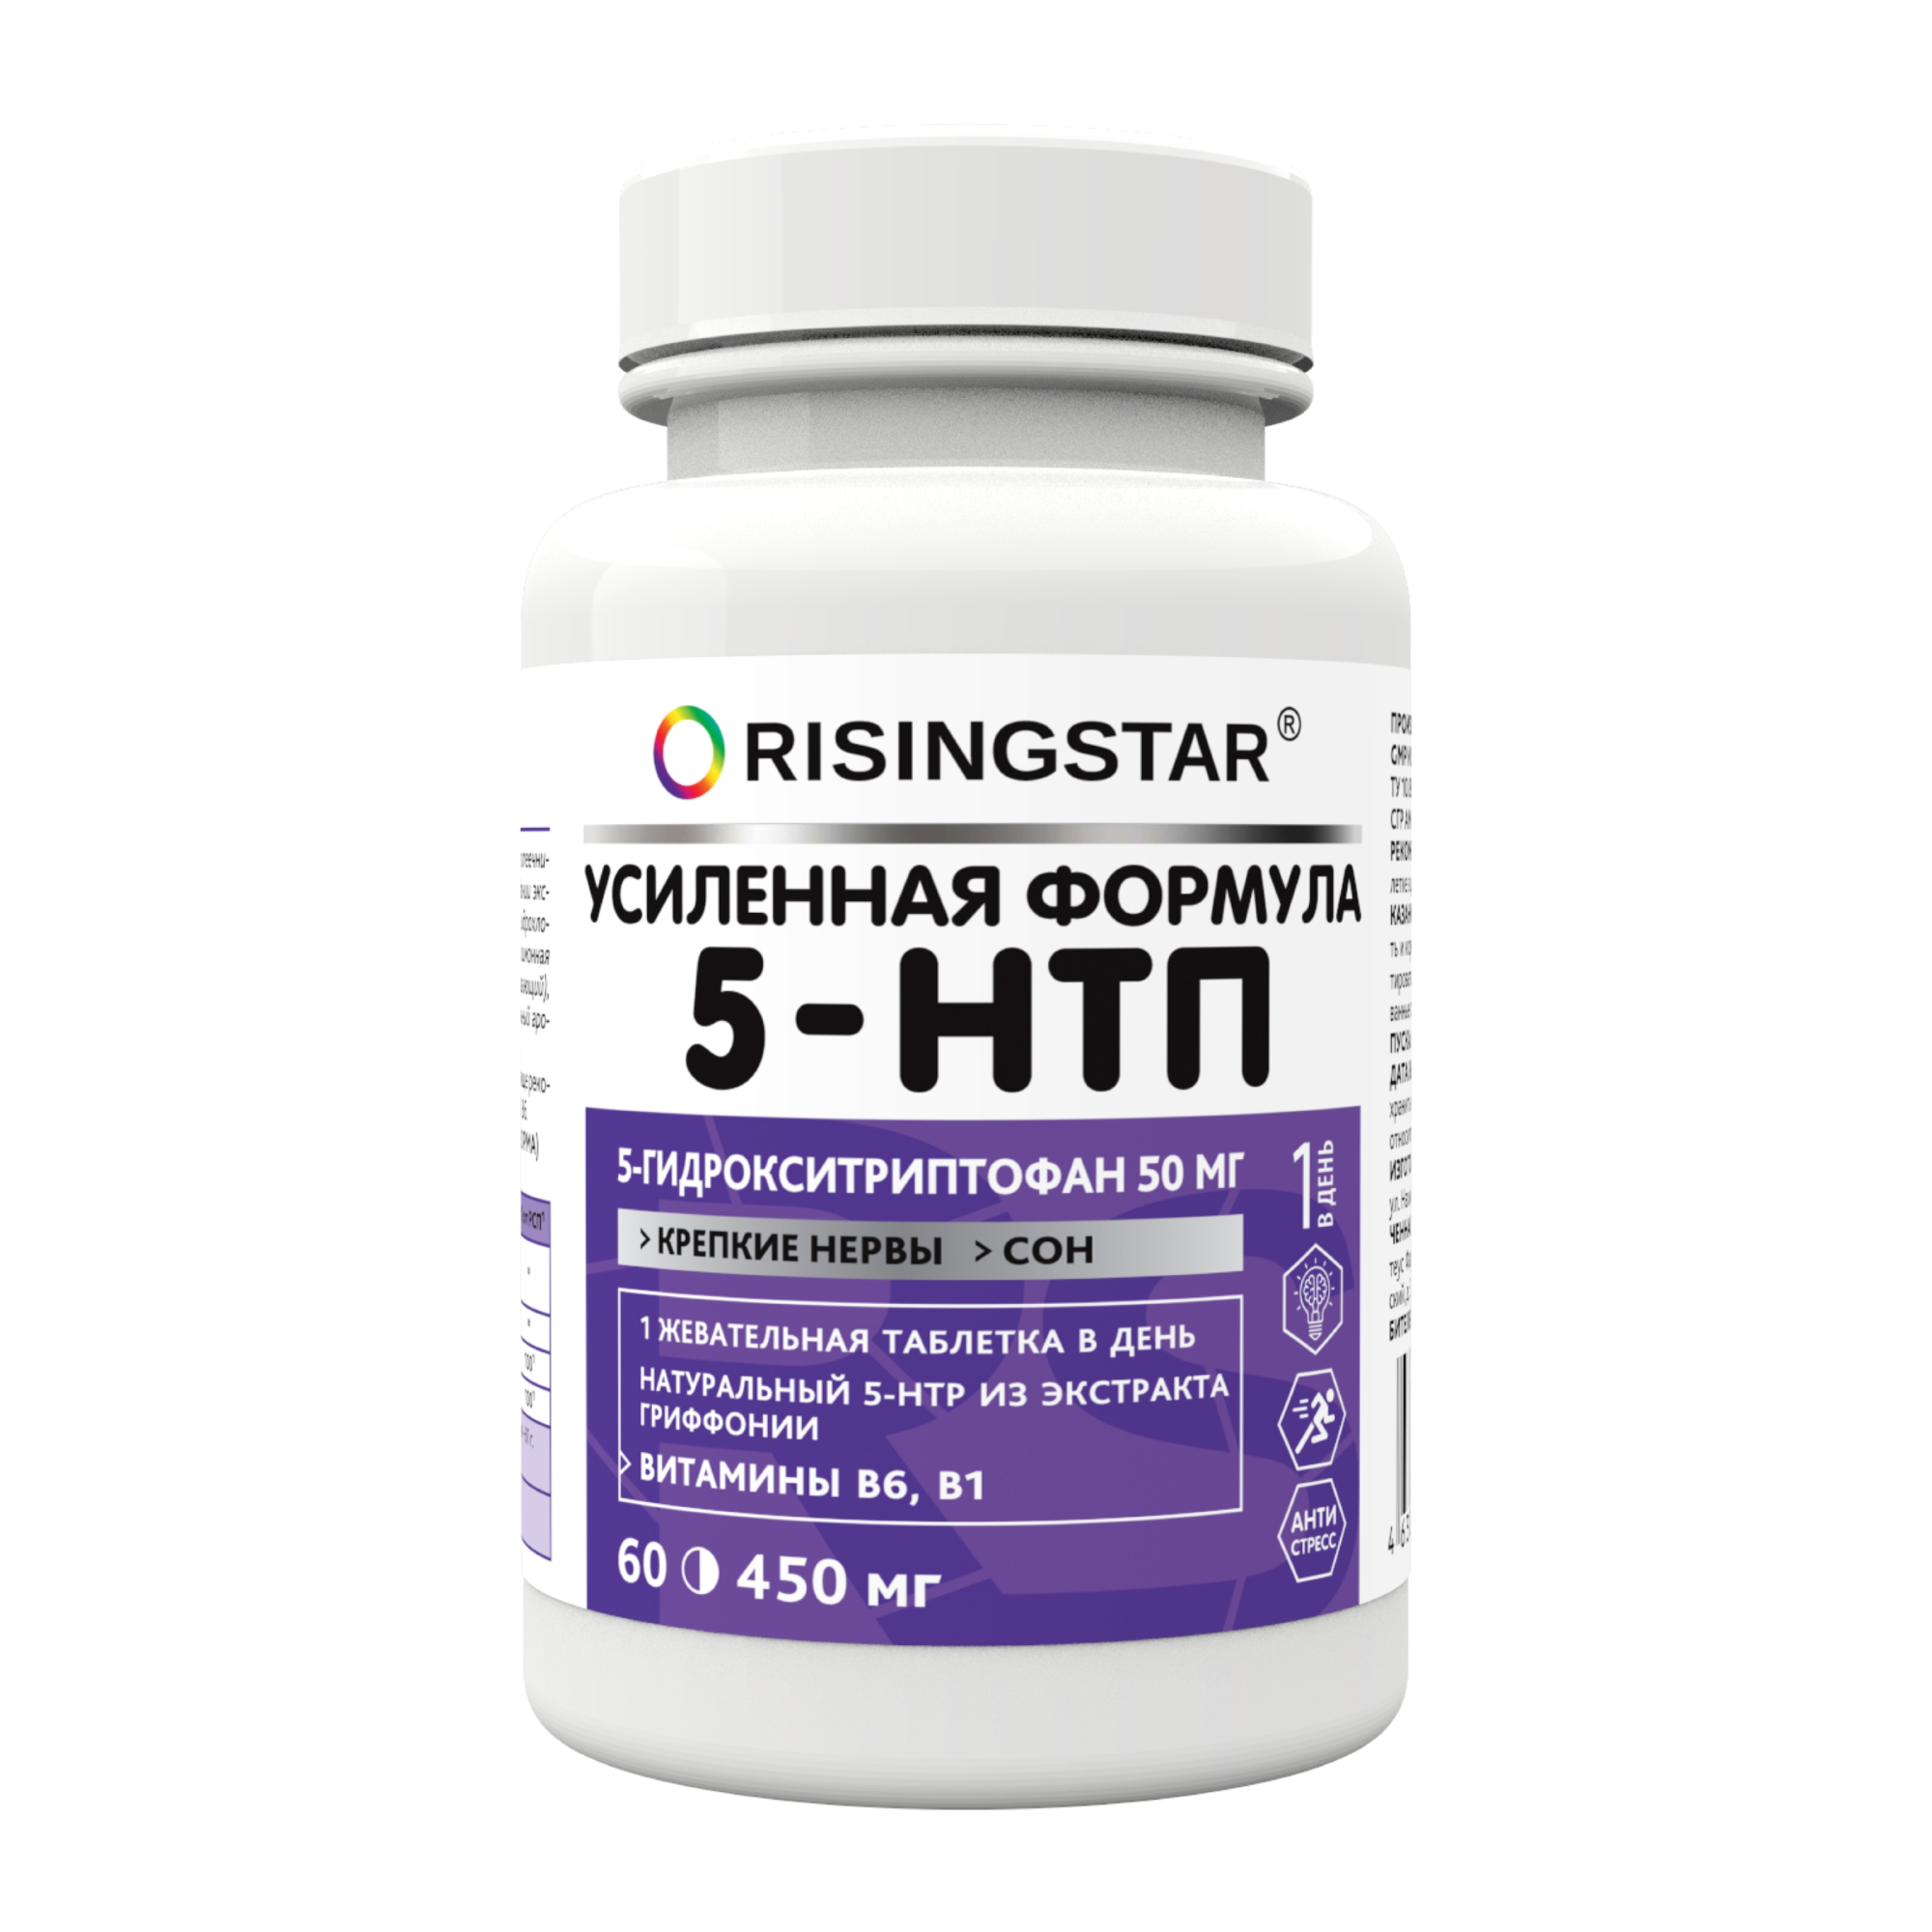 БАД Risingstar 5-htp альпиграс 60 таблеток, 60 г бад risingstar агарикус чага с мумие 60 таблеток 60 г